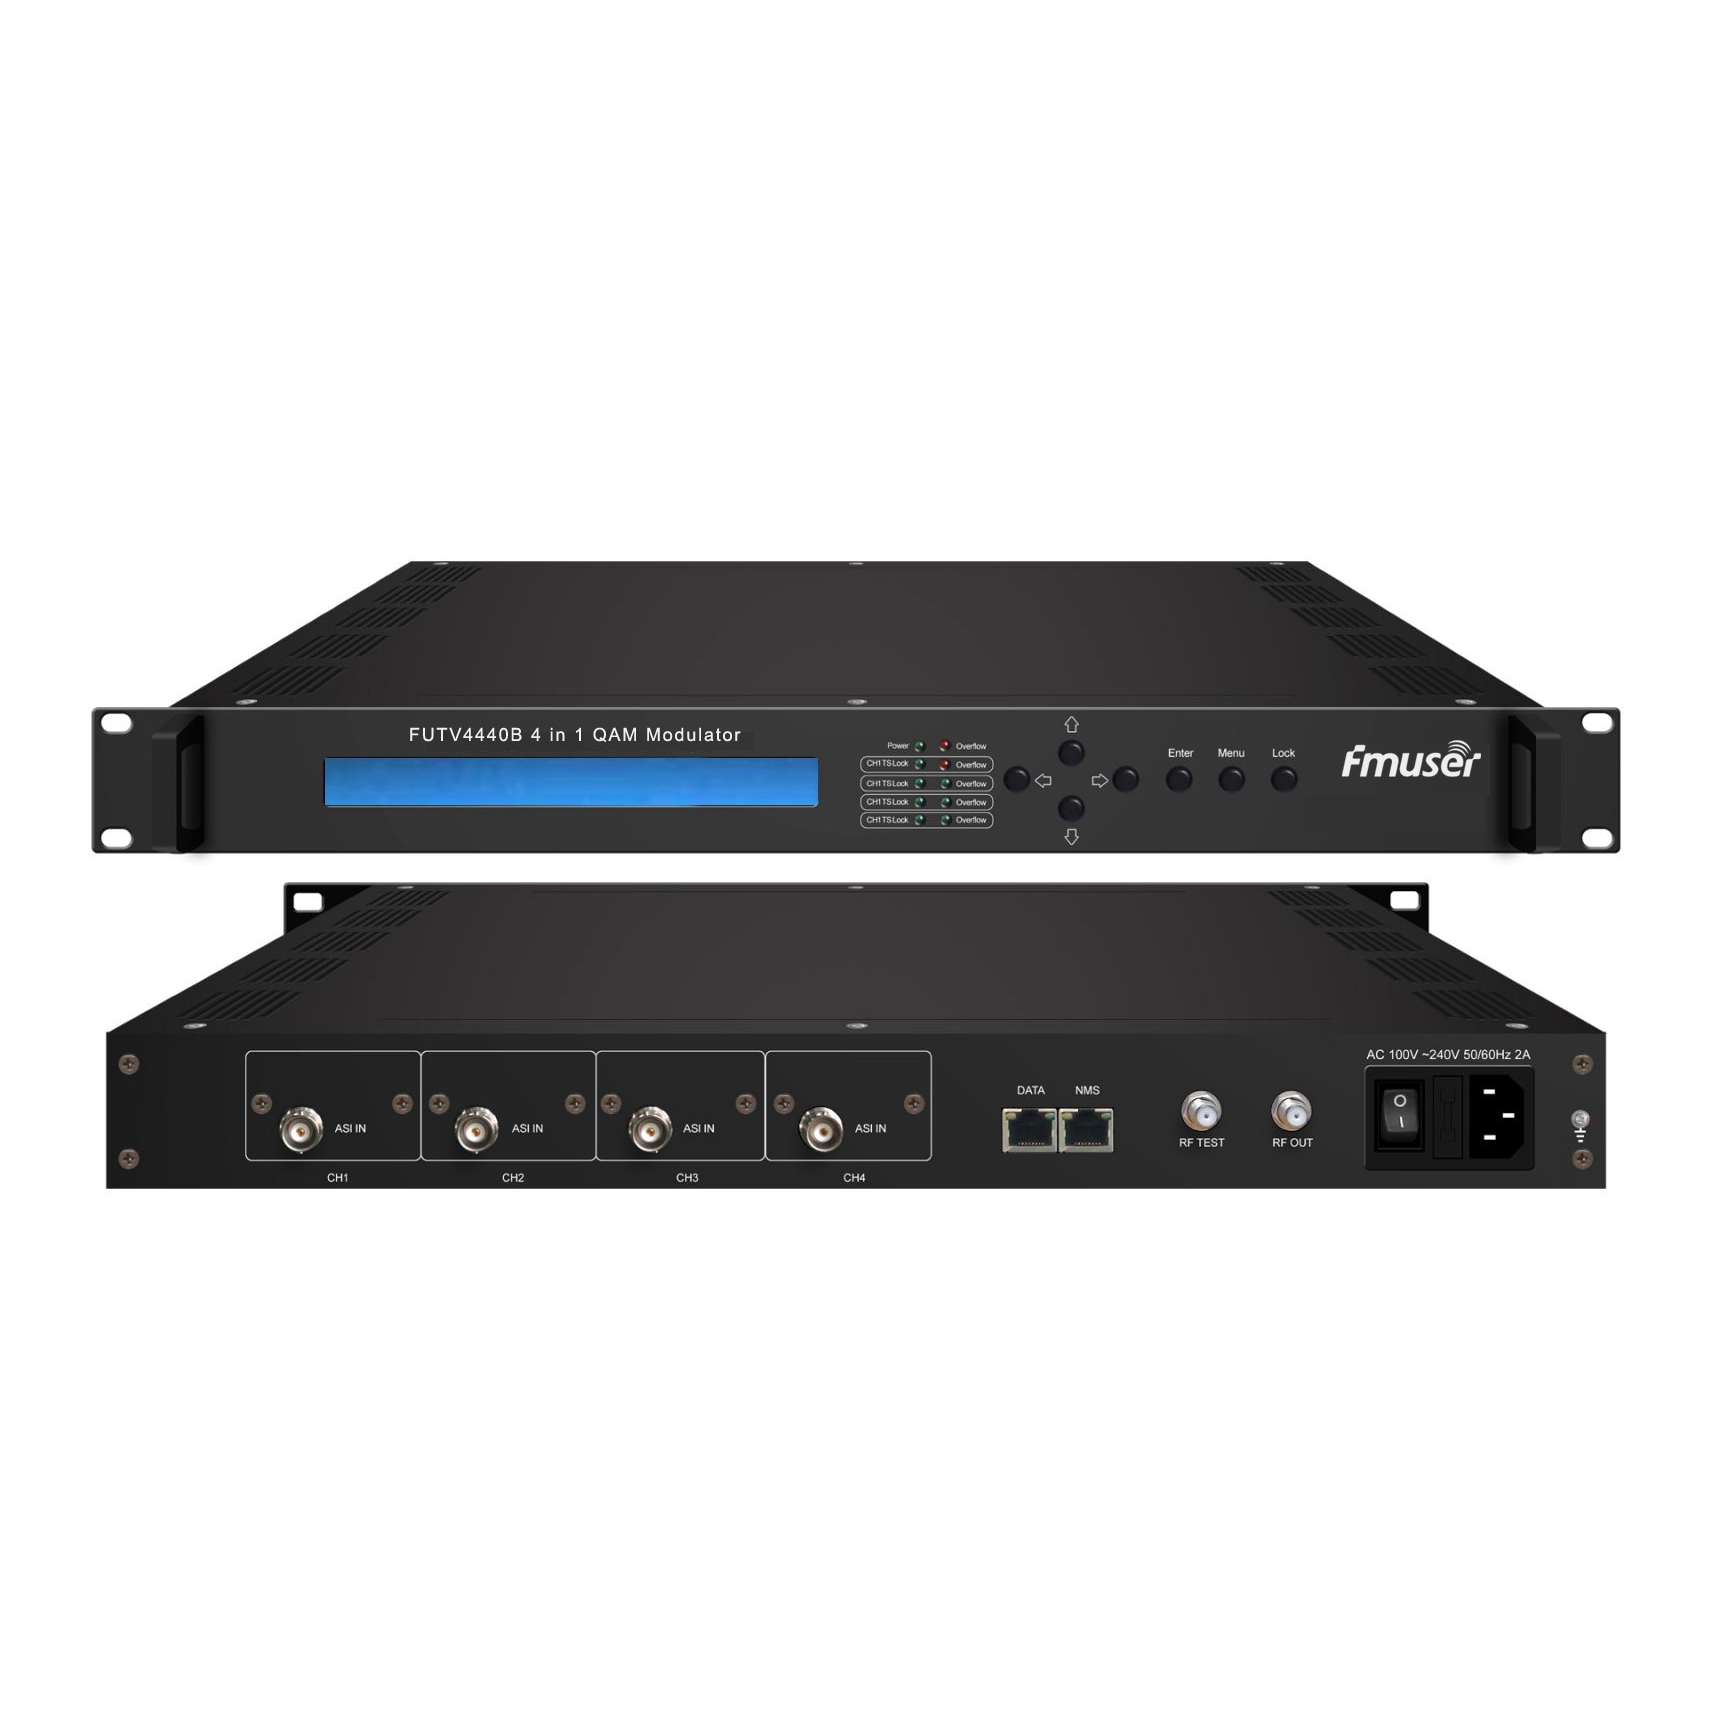 FMUSER FUTV4440B 4 trong 1 QAM Modulator (Tùy chọn 4 * ASI / 4 * QAM / 4 * DVB-S tuner / 4 * DVB-S2 chỉnh Input, RF Output) với quản lý mạng